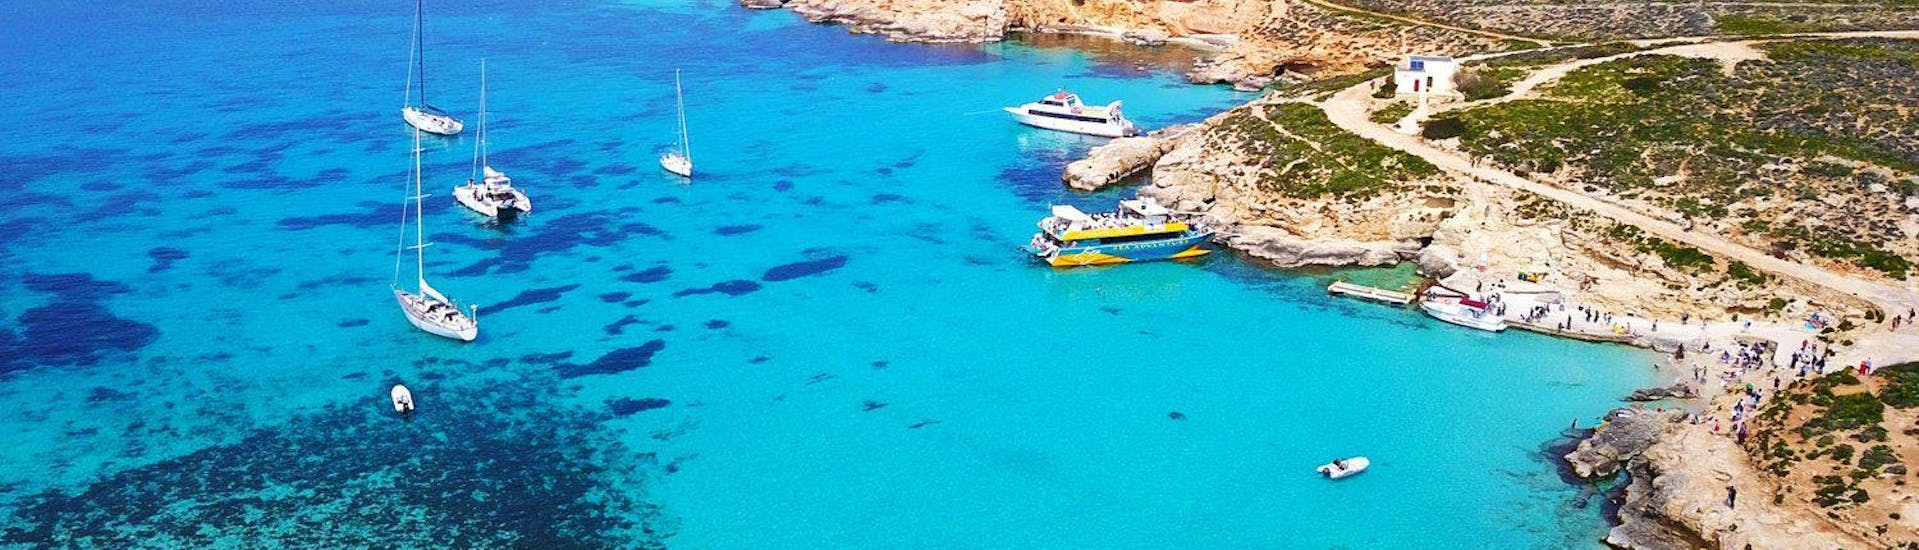 Des vacanciers profitent d'une vue superbe lors de leur sortie en catamaran au Blue Lagoon, Citadella et Gozo organisée par Sea Adventure Excursions.